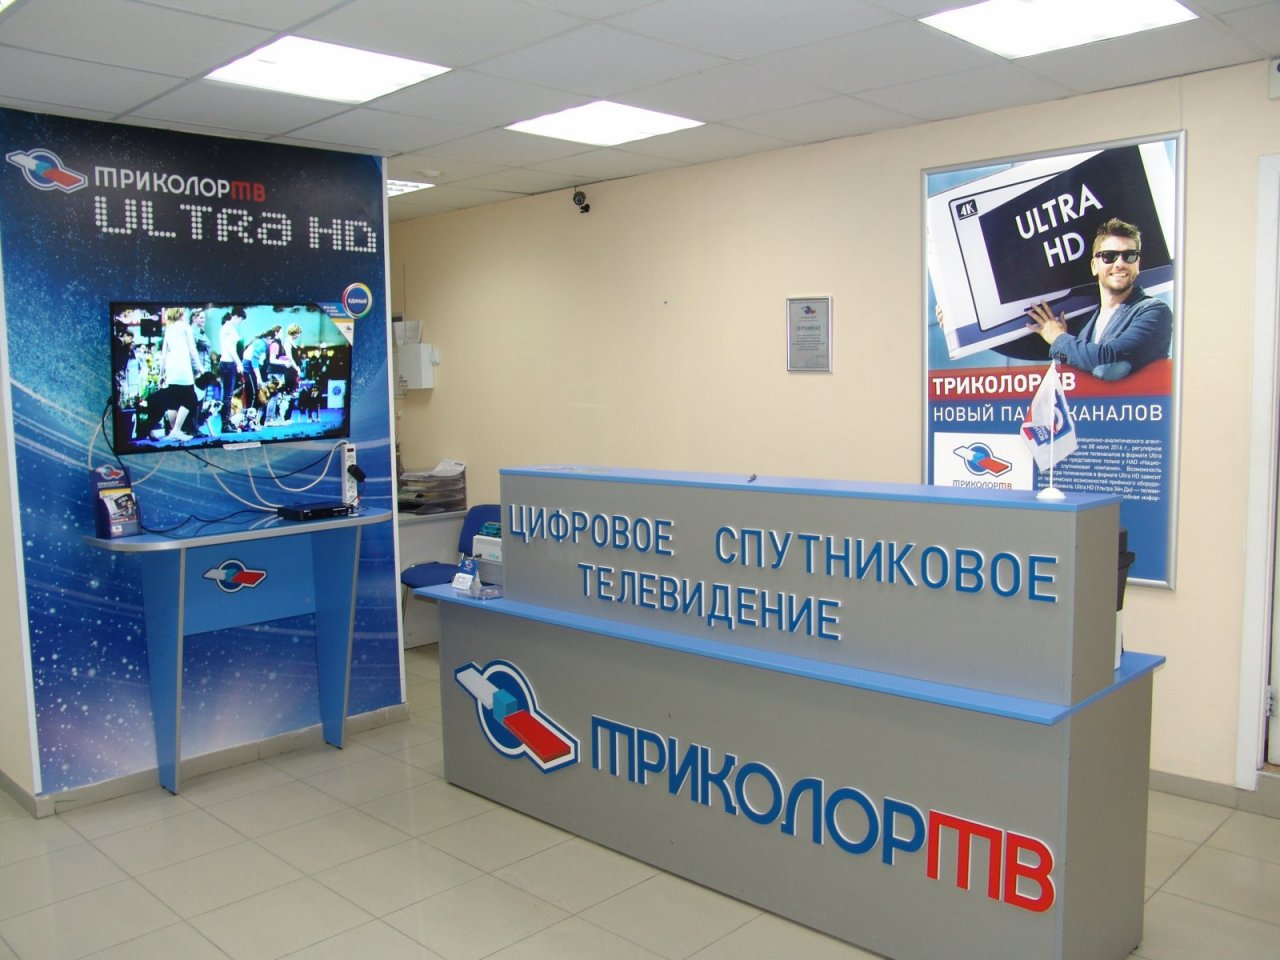 «Триколор» признан общеизвестным товарным знаком на территории РФ